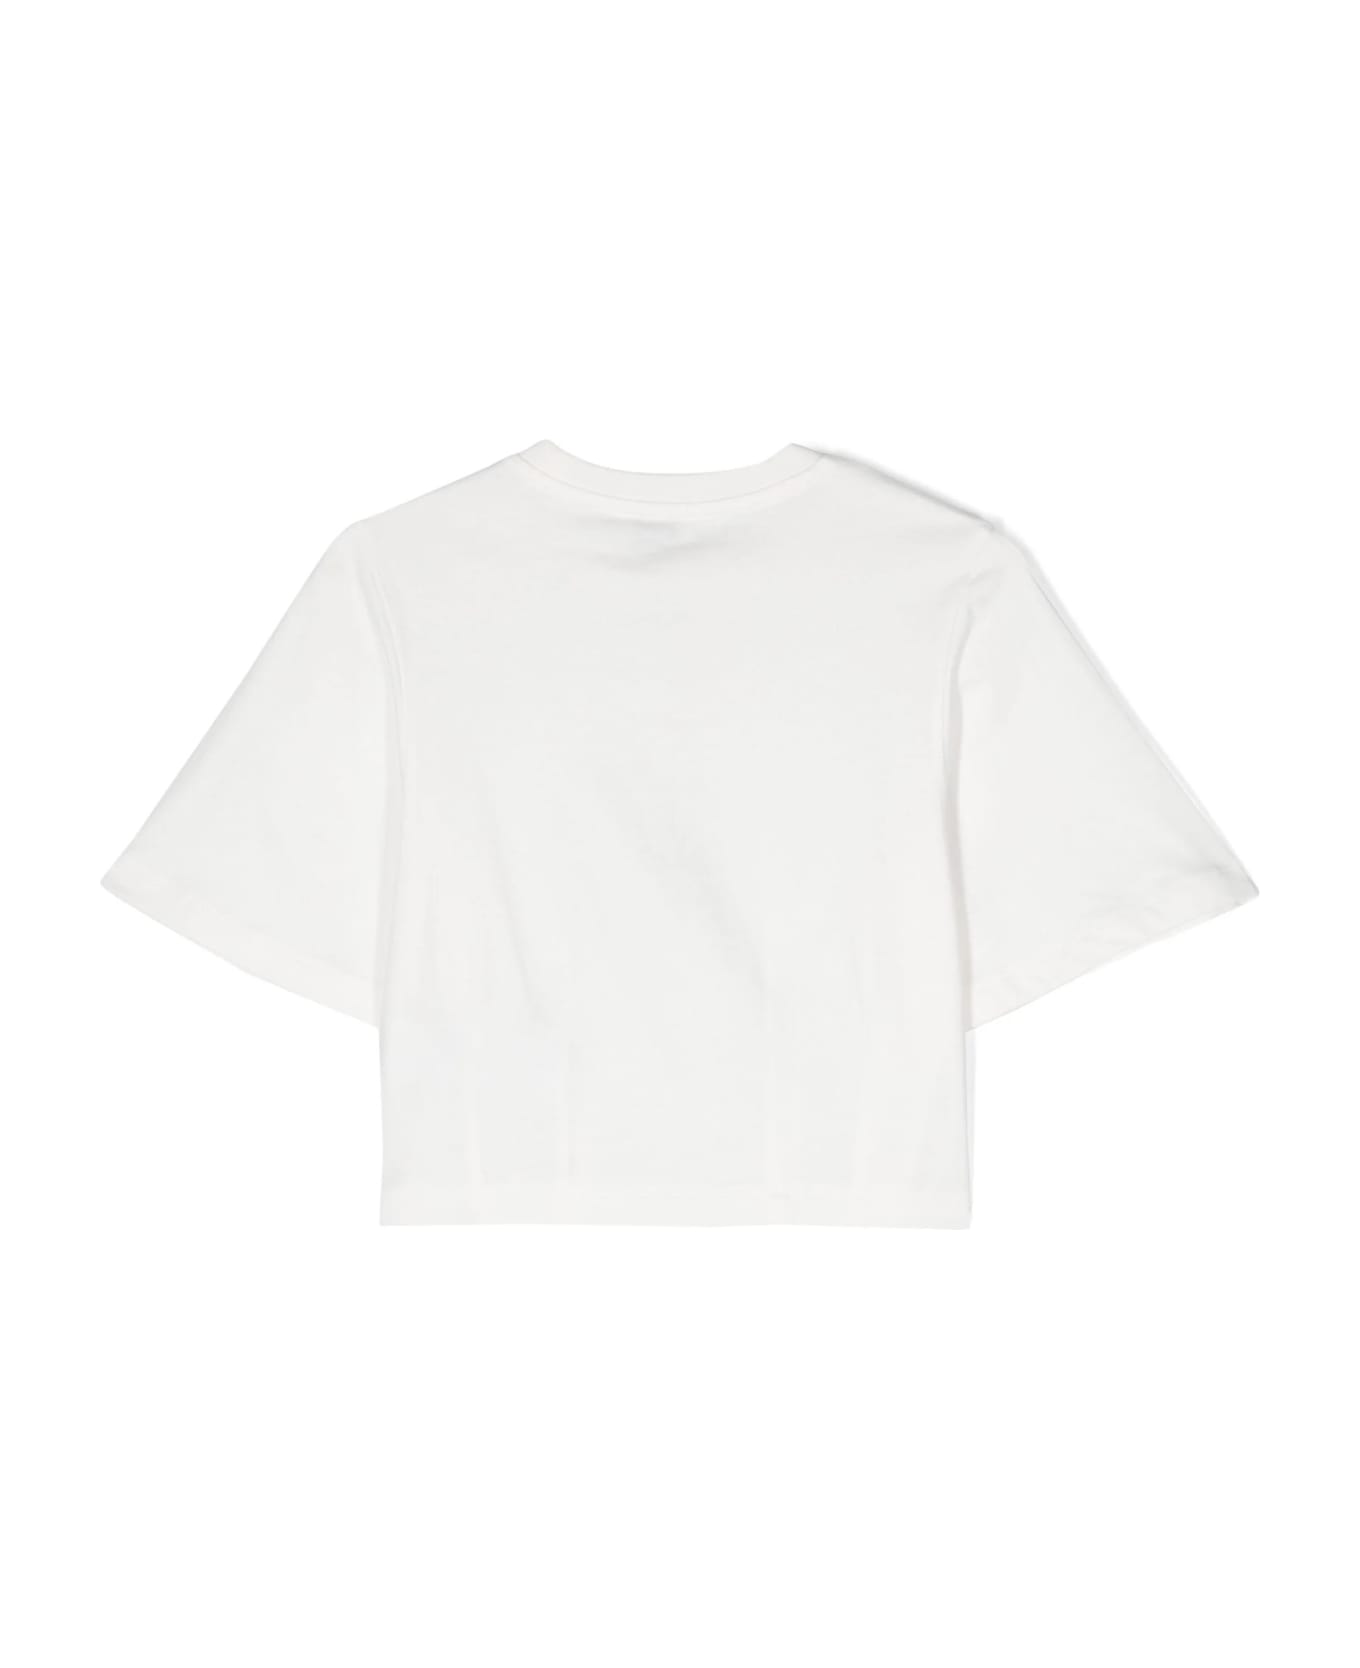 Etro White Crop T-shirt With Etro Pegaso Logo - White